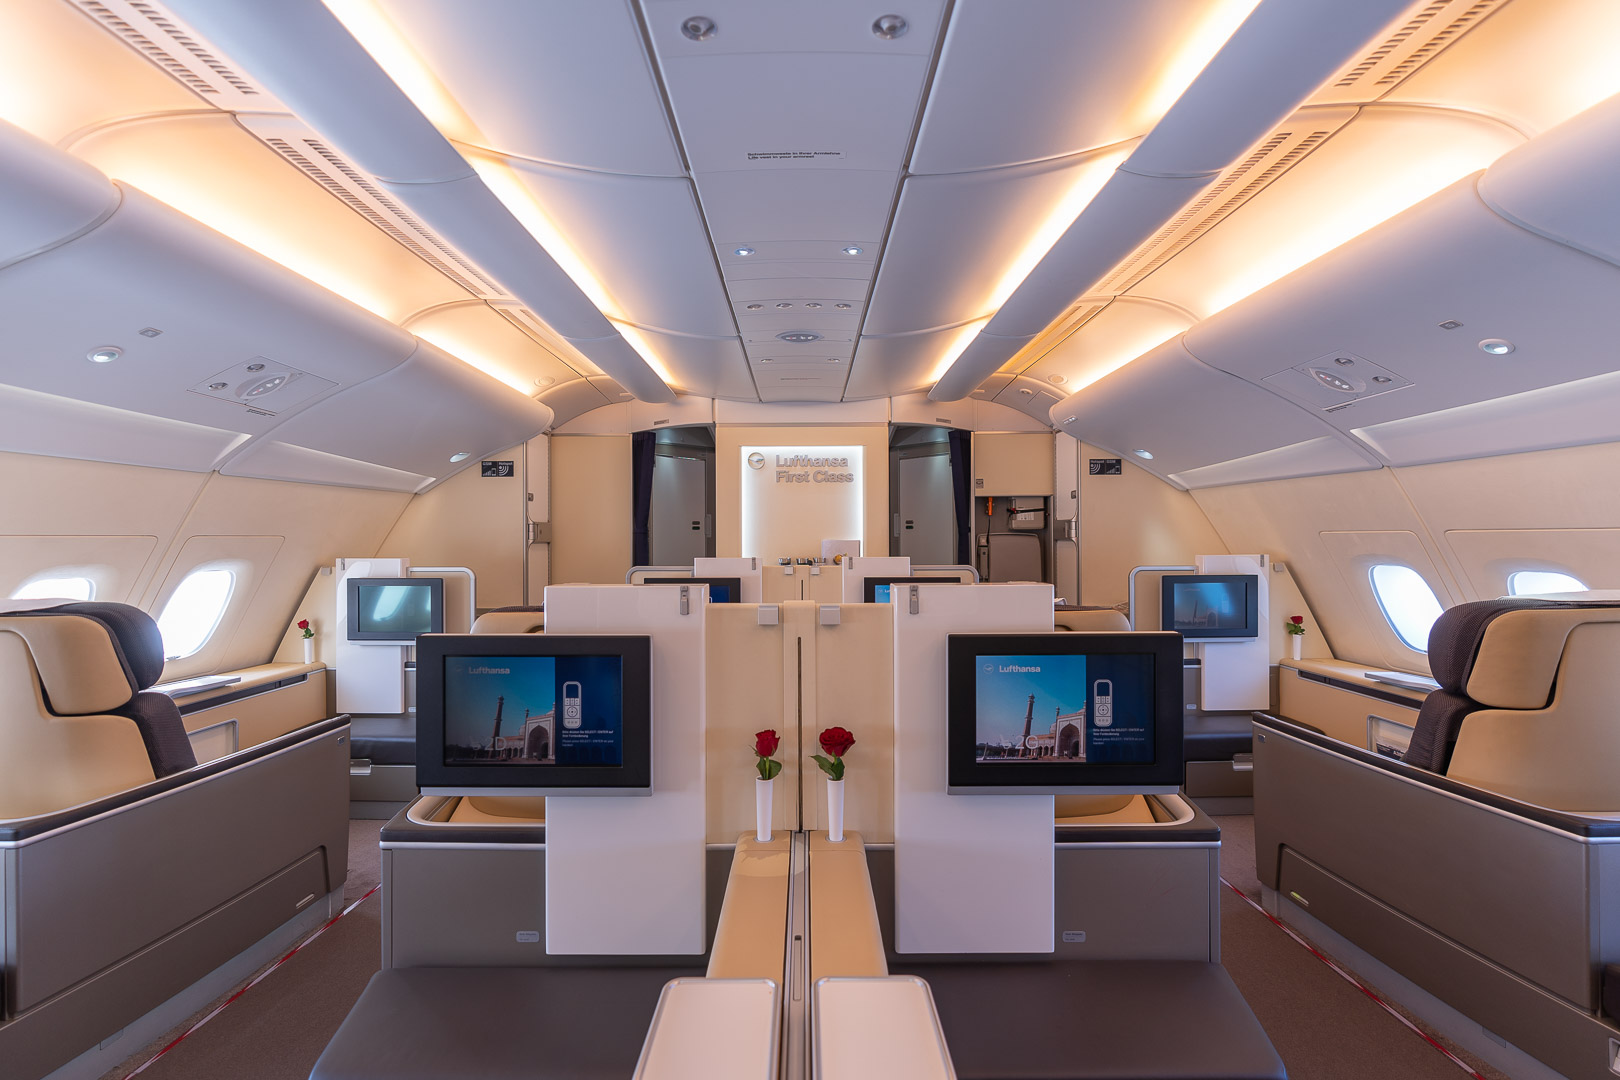 First Class & Business Class flight reviews The Luxury Traveller